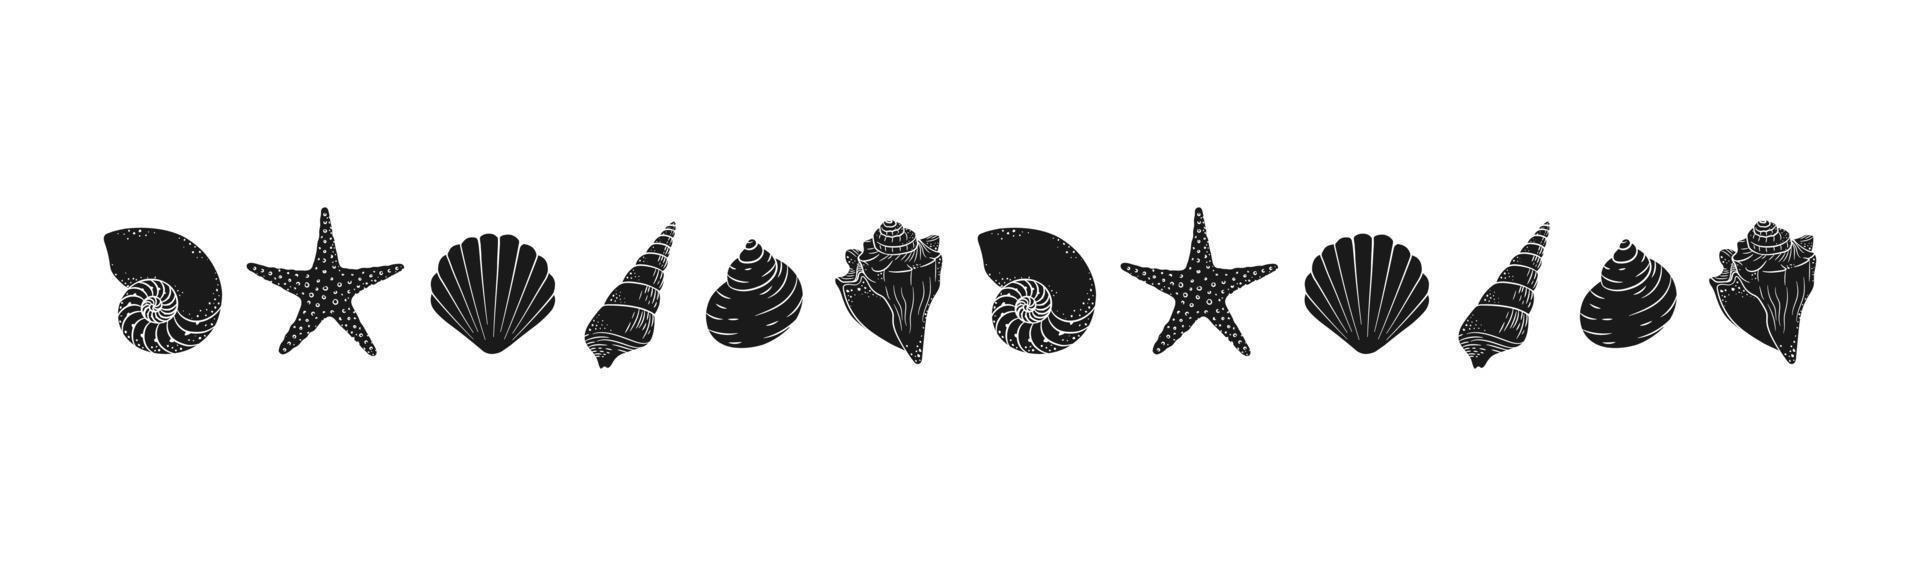 conchas marinas y silueta divisoria de borde de estrella de mar. plantilla de diseño de mar y océano. ilustración vectorial verano o fiesta en la playa, diseño publicitario vector